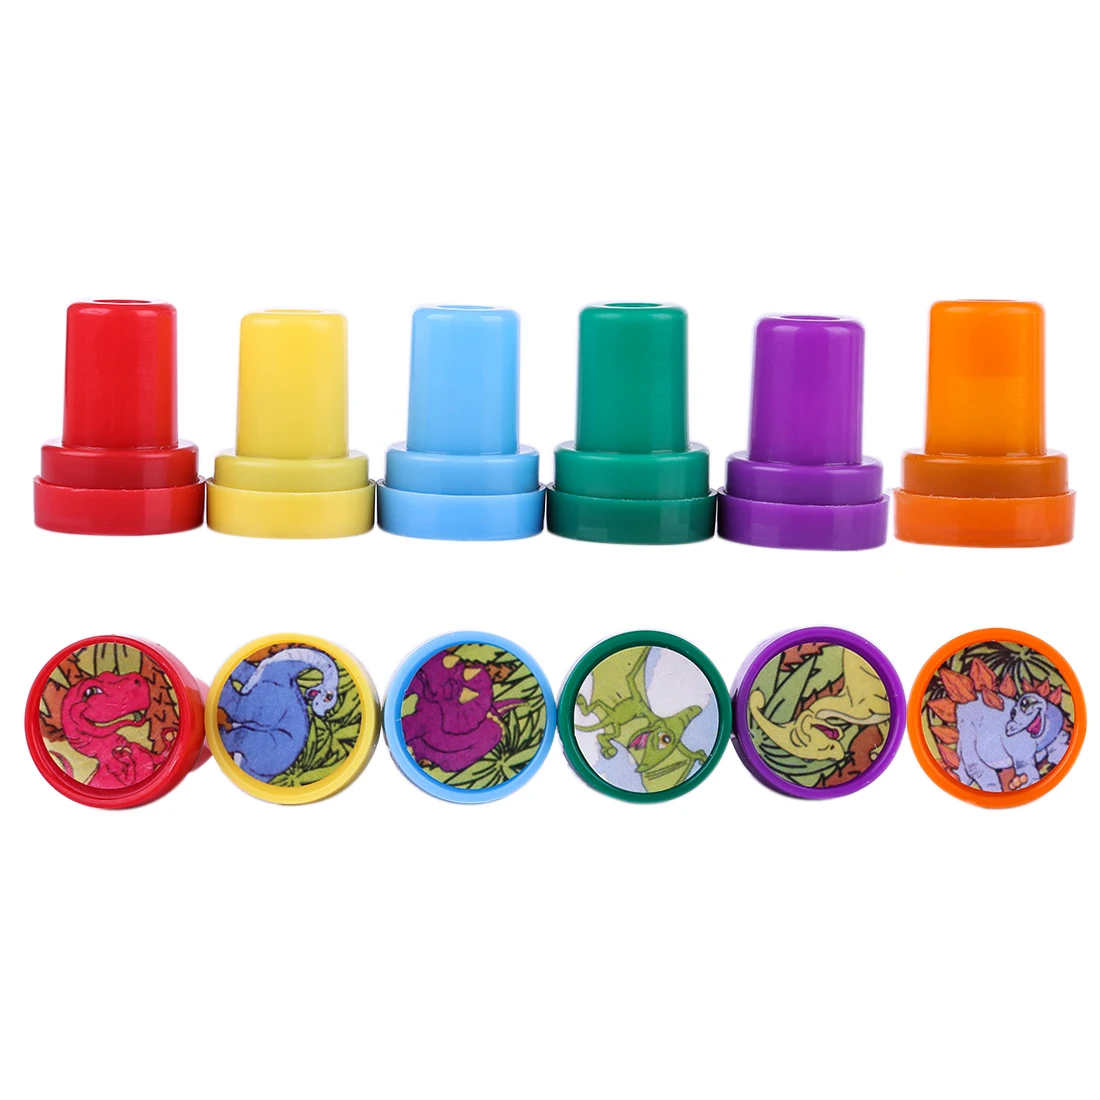 10 шт Цветочные штампы набор канцелярских принадлежностей для детей подарок DIY дневник декоративные вечерние игрушки игрушечная печать-цвет случайный